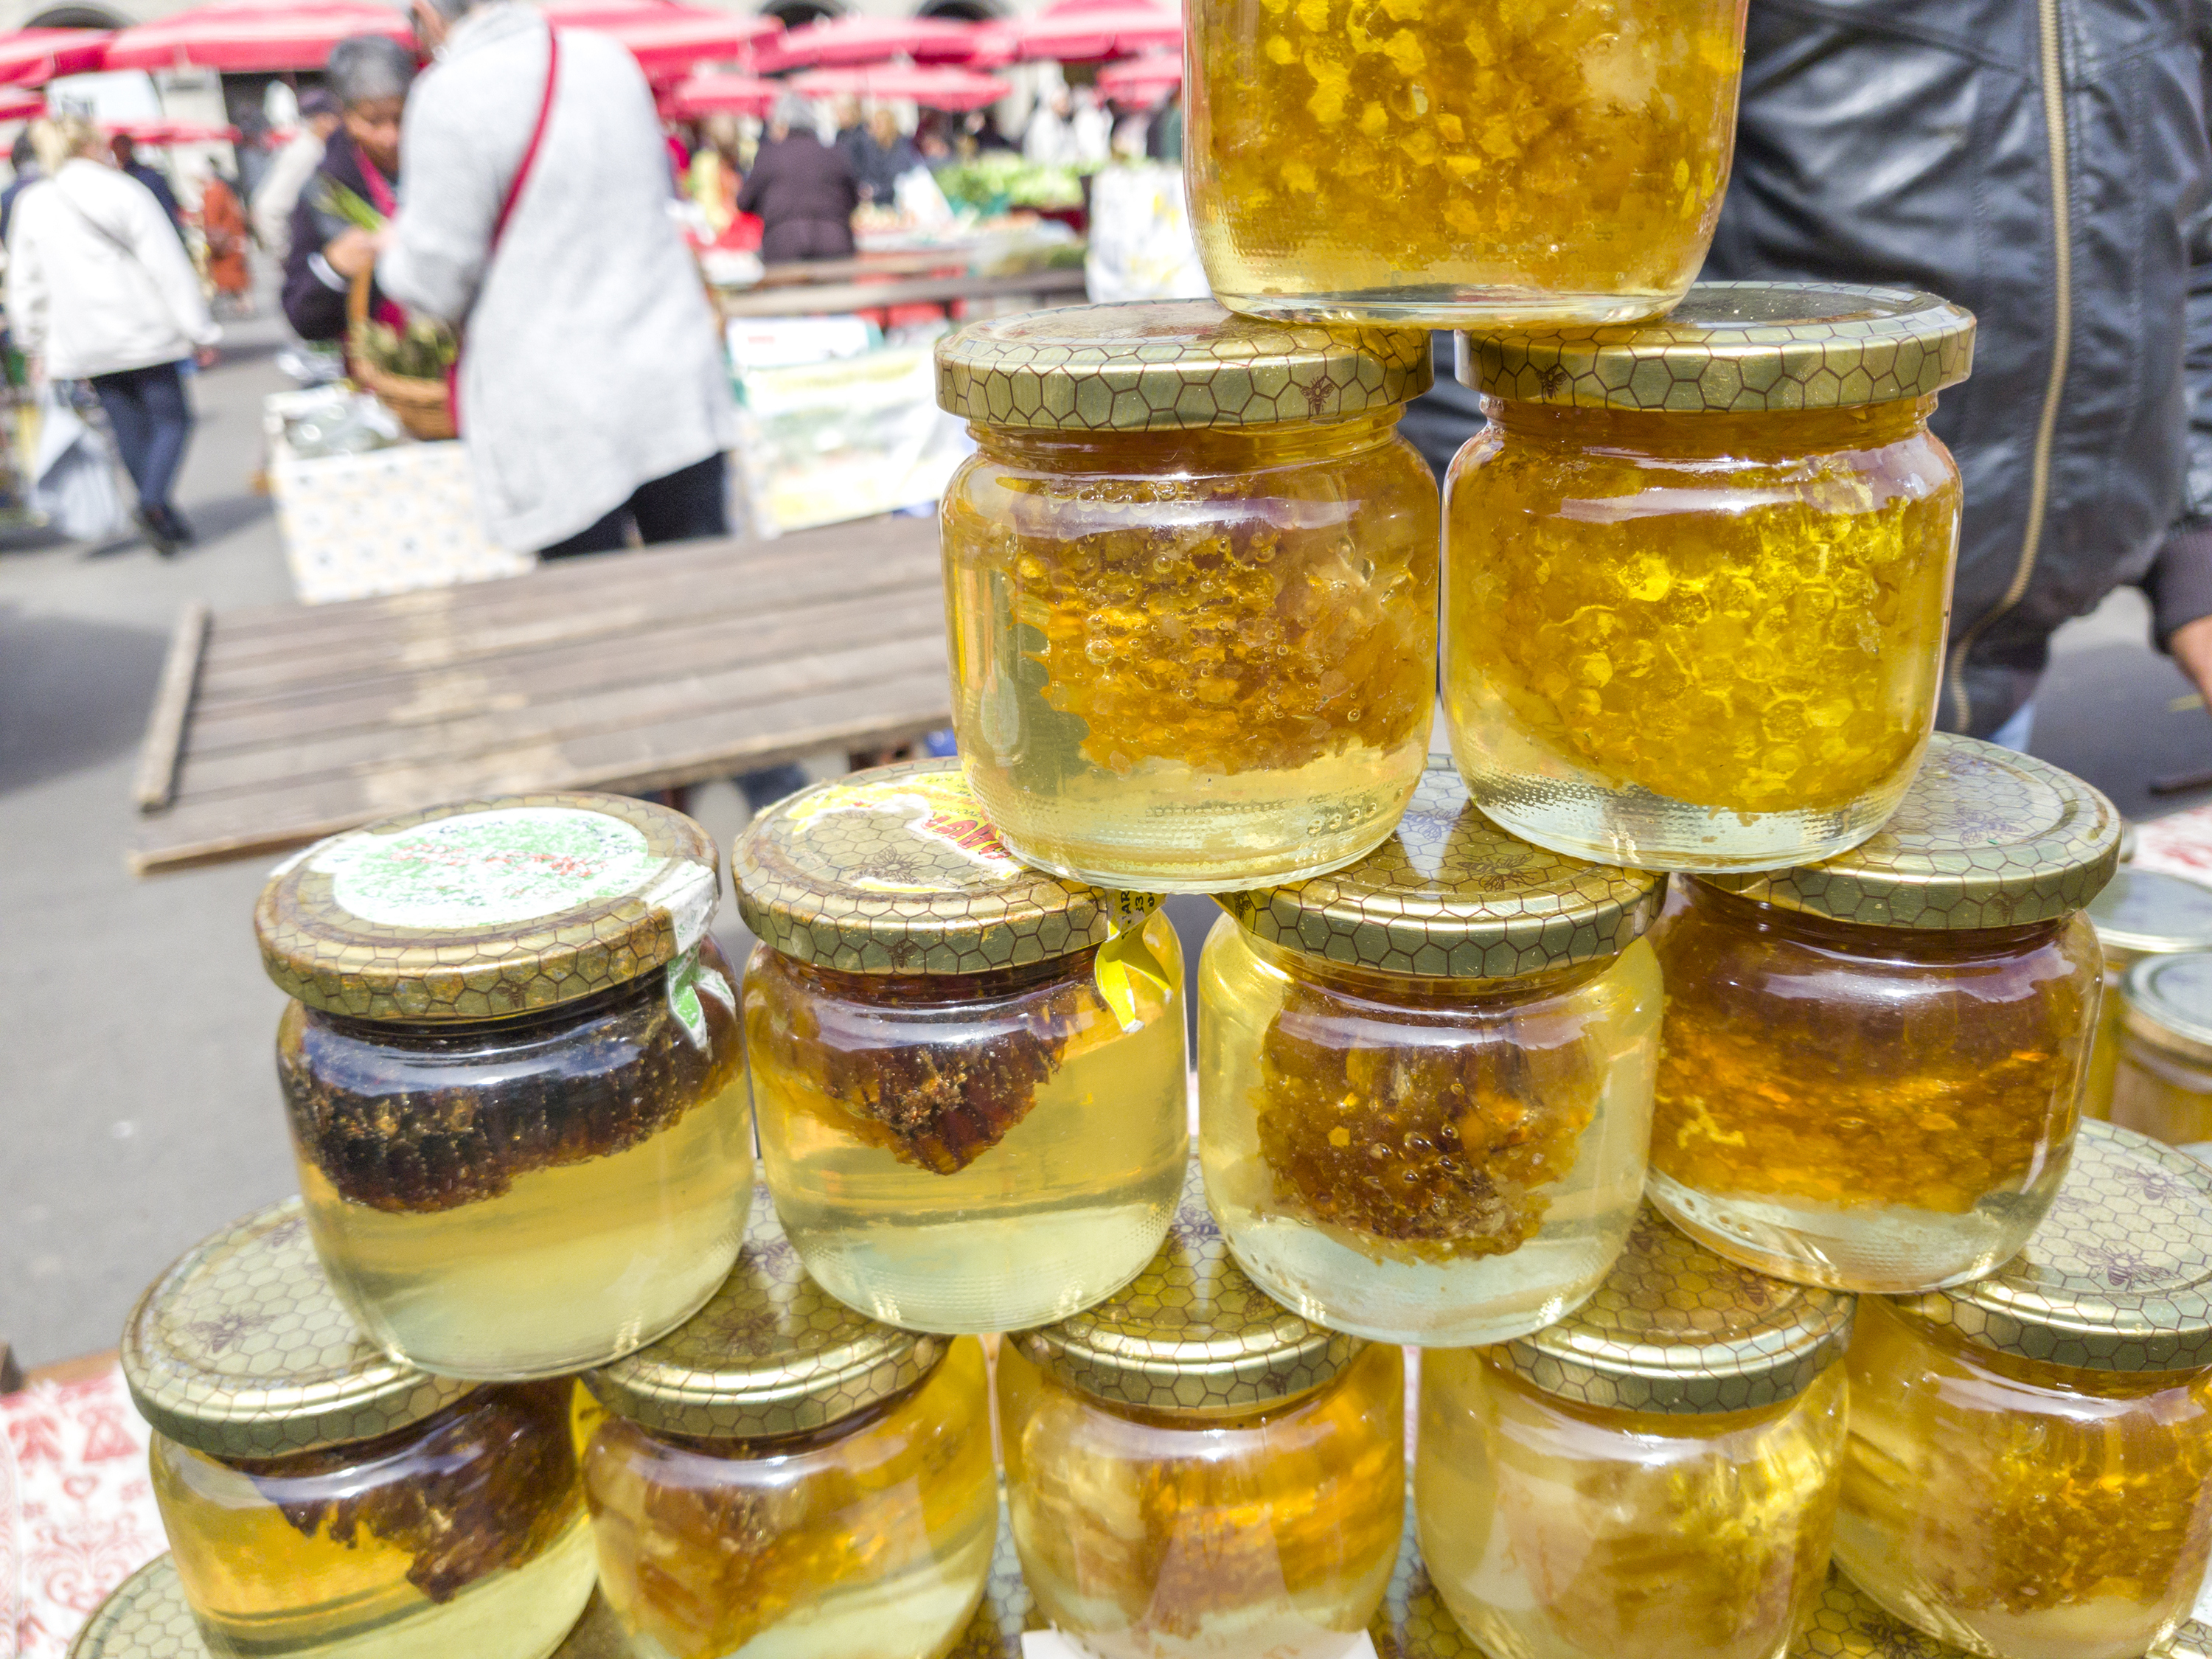 Buy honey at the farmers’ market